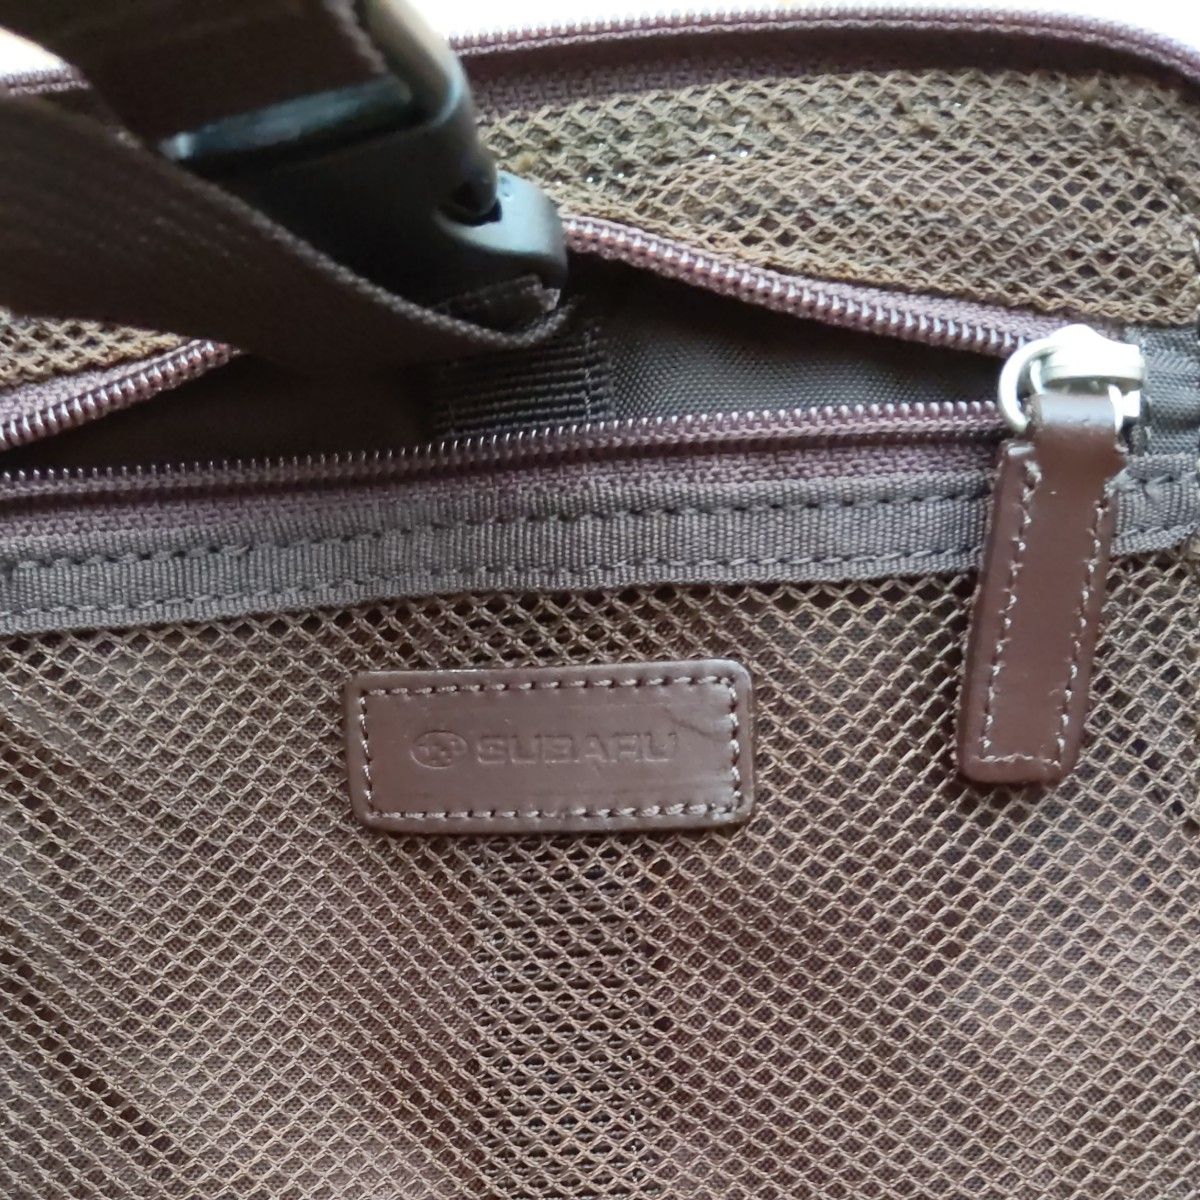 SUBARU非売品トラベルバッグ、ややハードなバッグ、ハンガー吊り下げ可能、サイドに取っ手あり